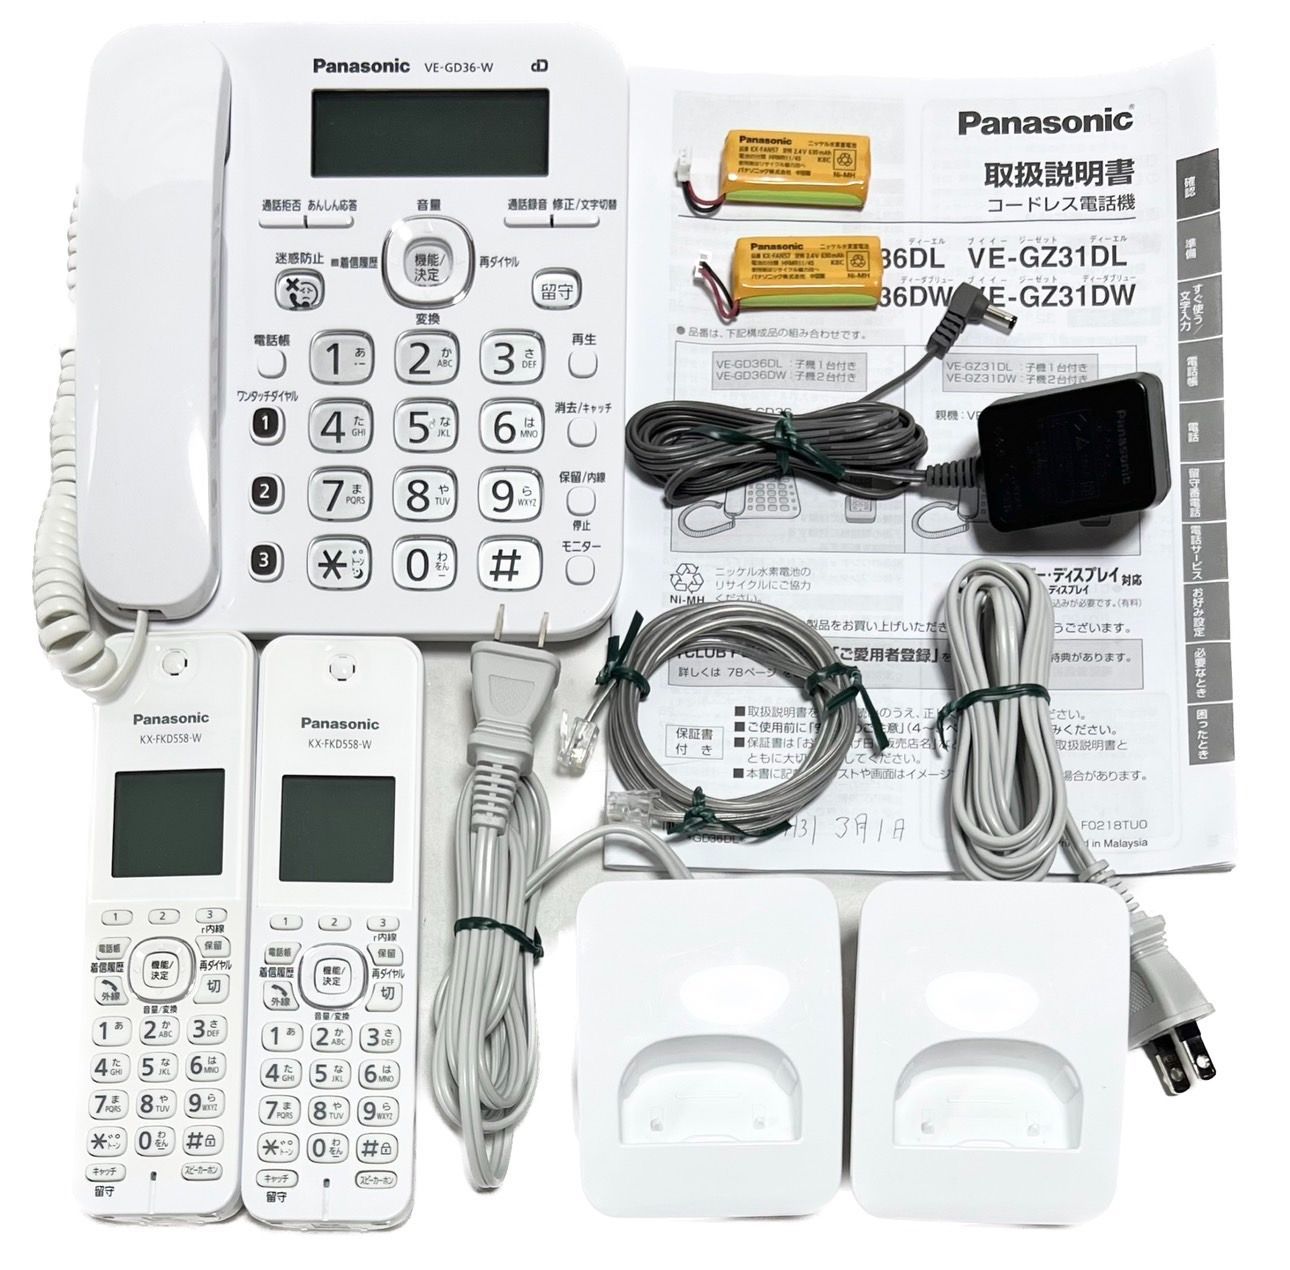 多様な Panasonic VE-GD55DW コードレス電話機